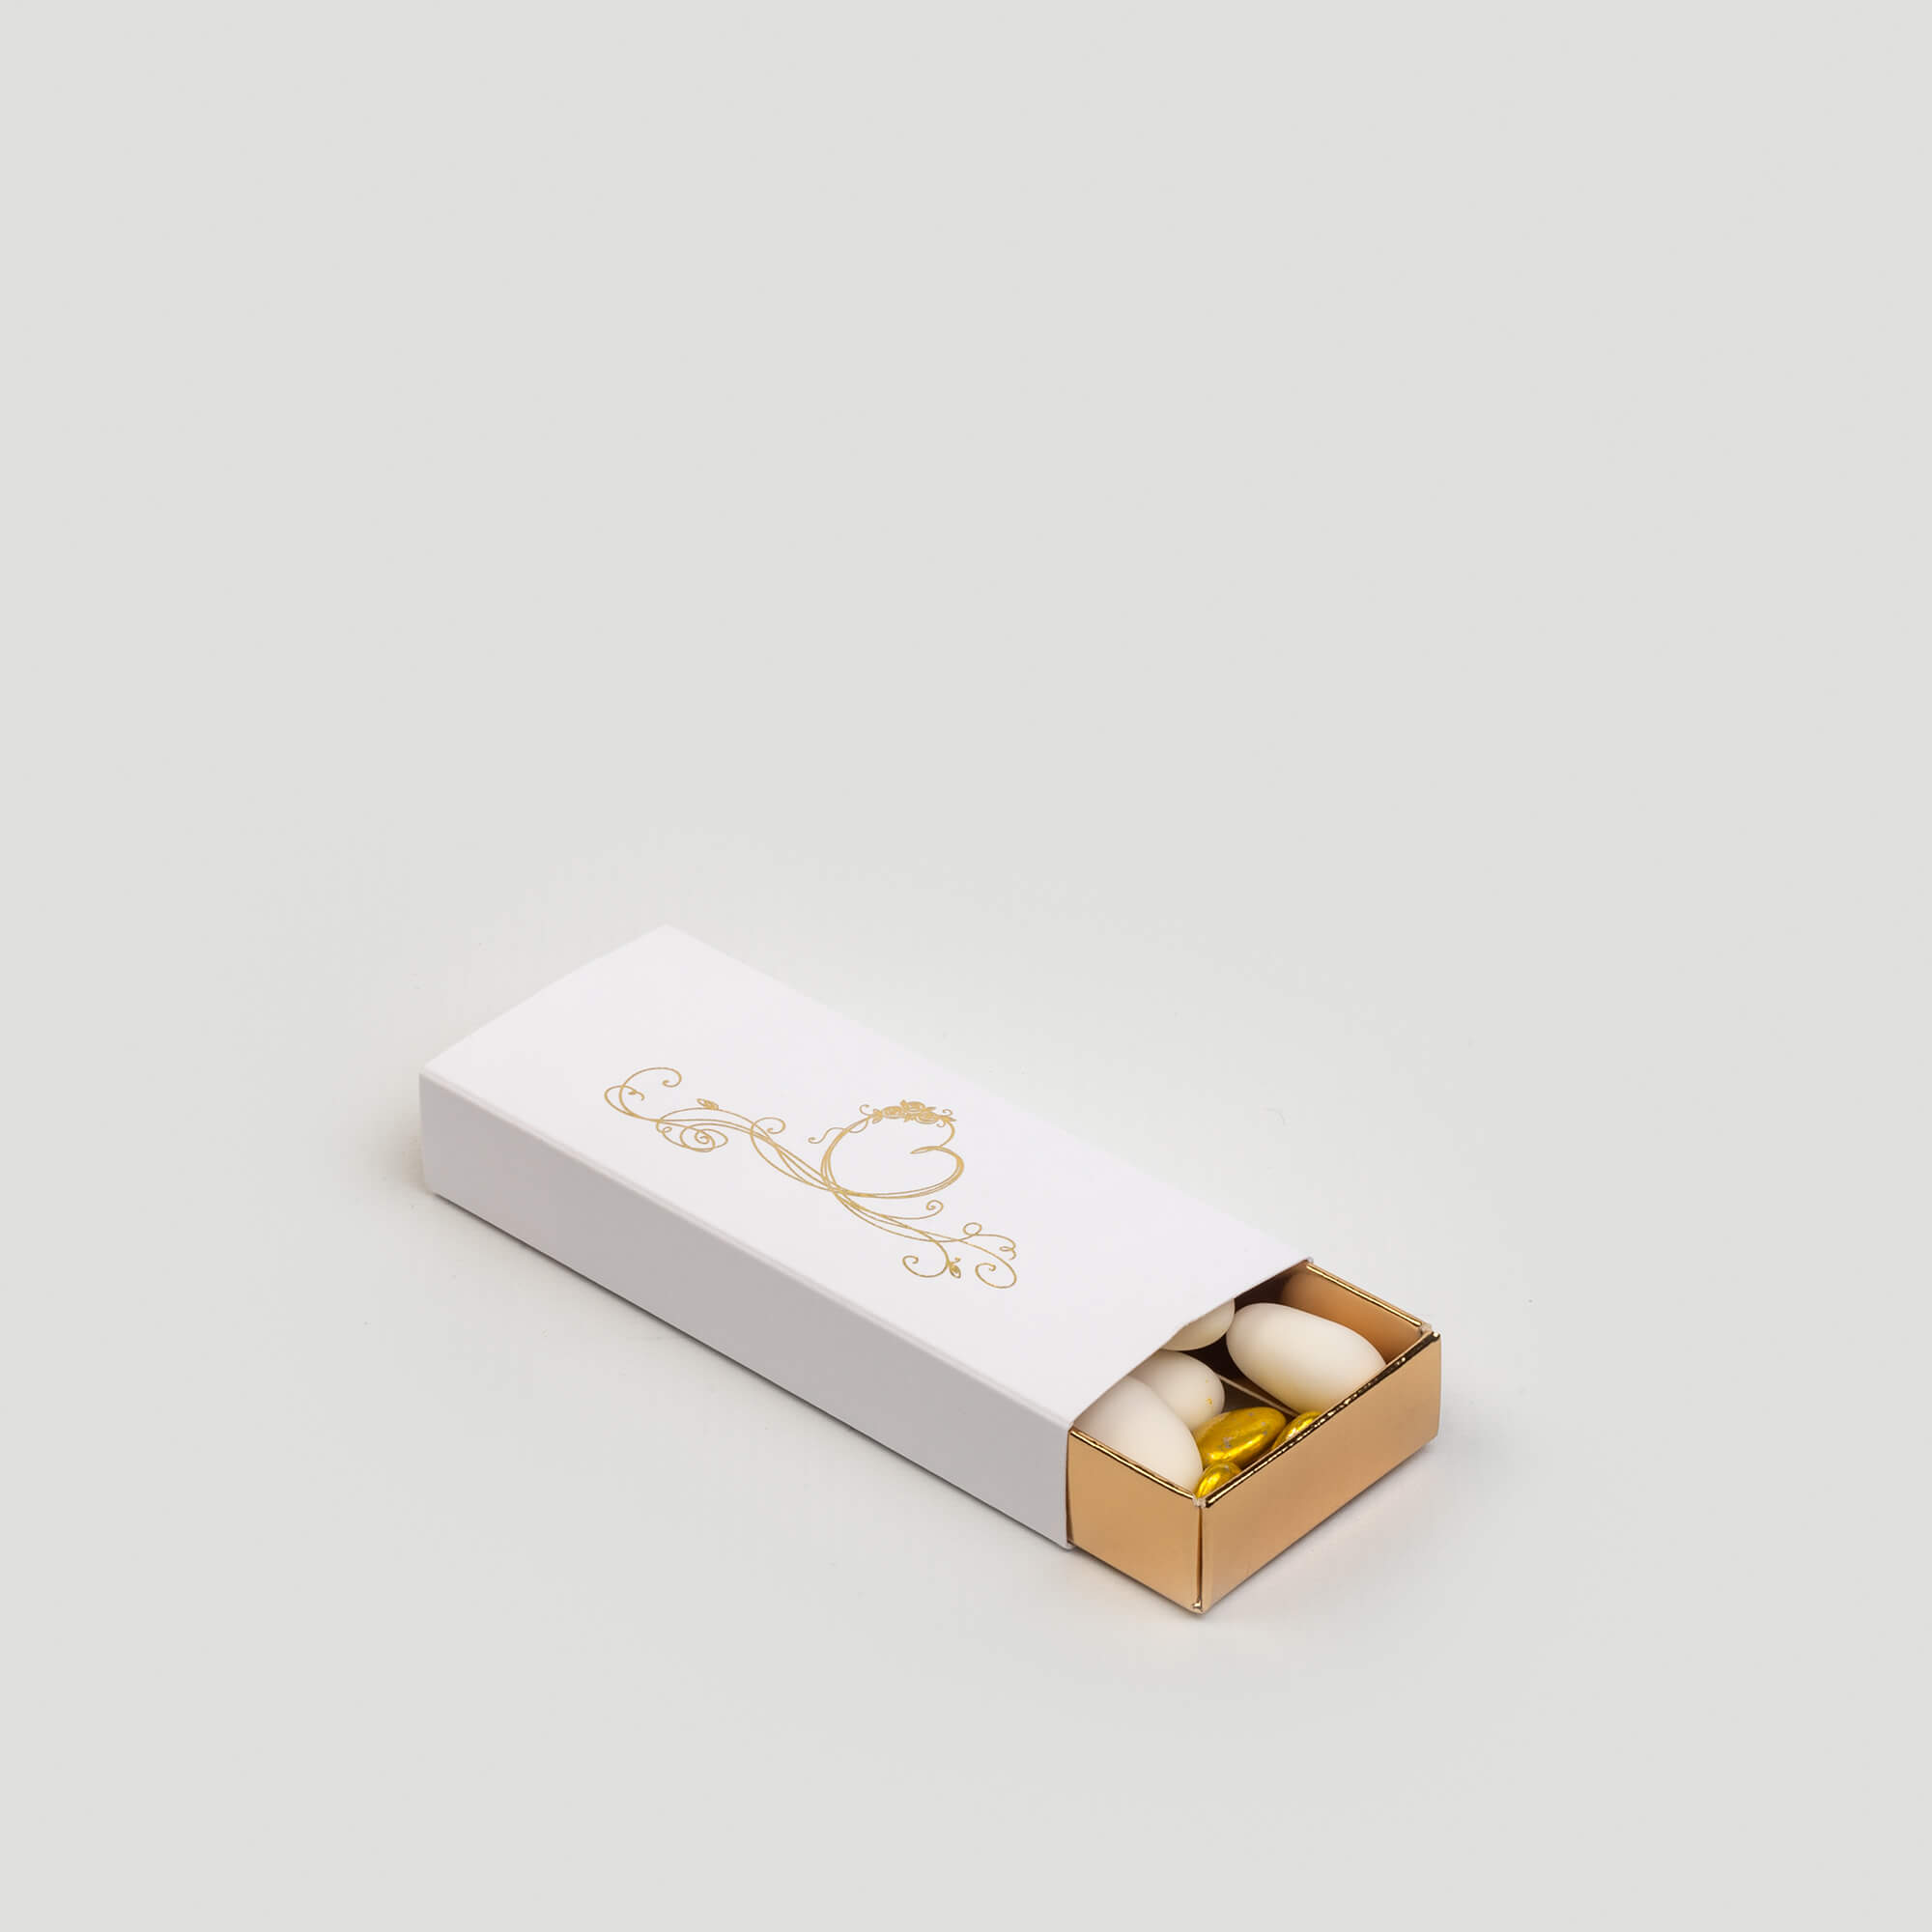 Boîte tiroir pour dragées, 40x75x23, intérieur couleur or, extérieur couleur blanc